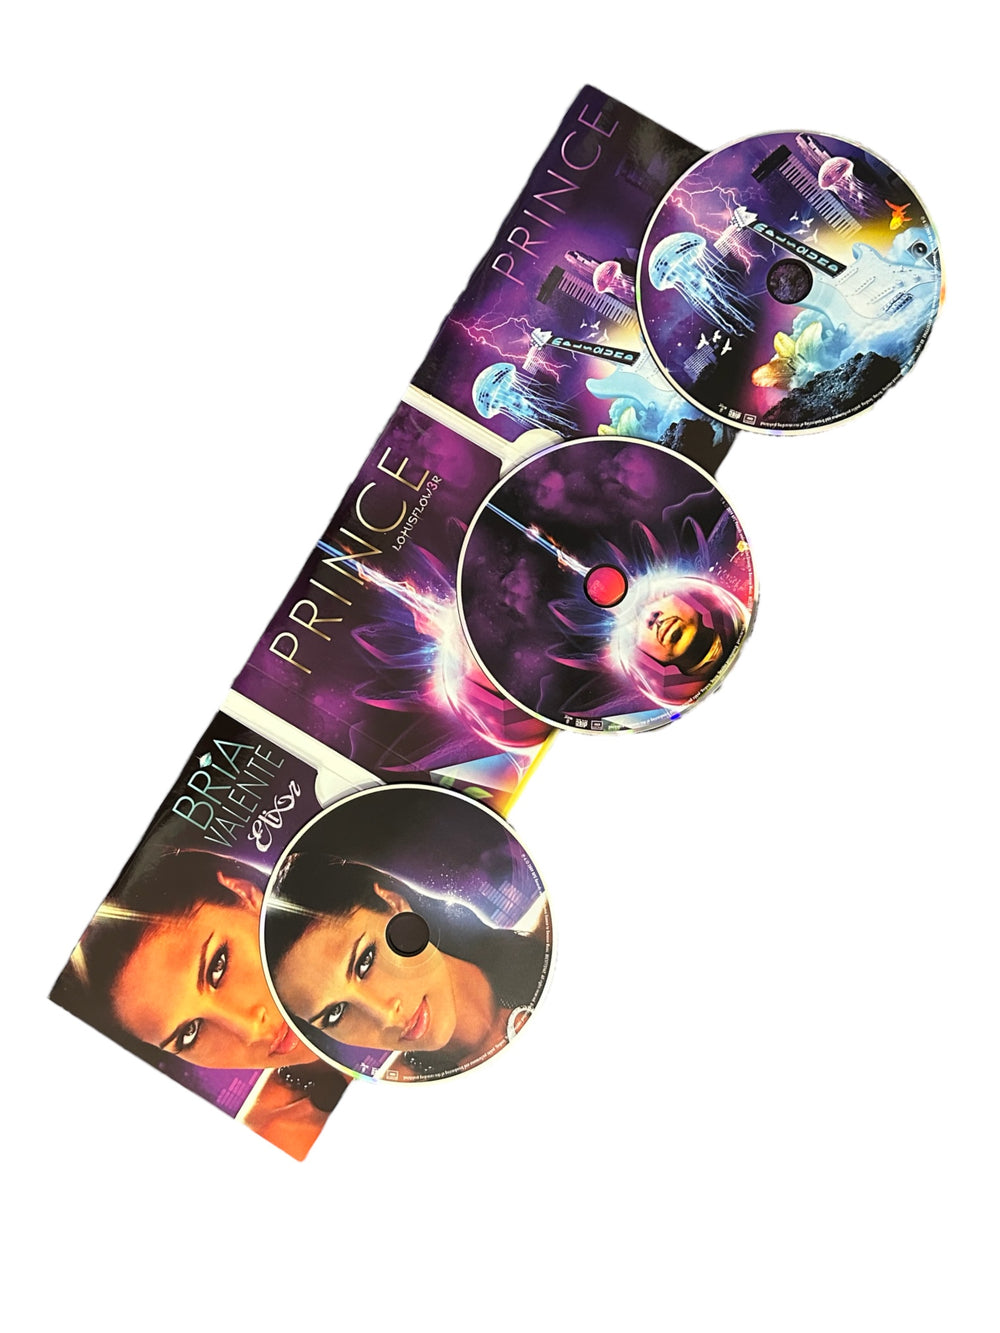 Prince Elixer Lotusflow3r MPLSound 3 CD Album Set 2009 Bria Valente